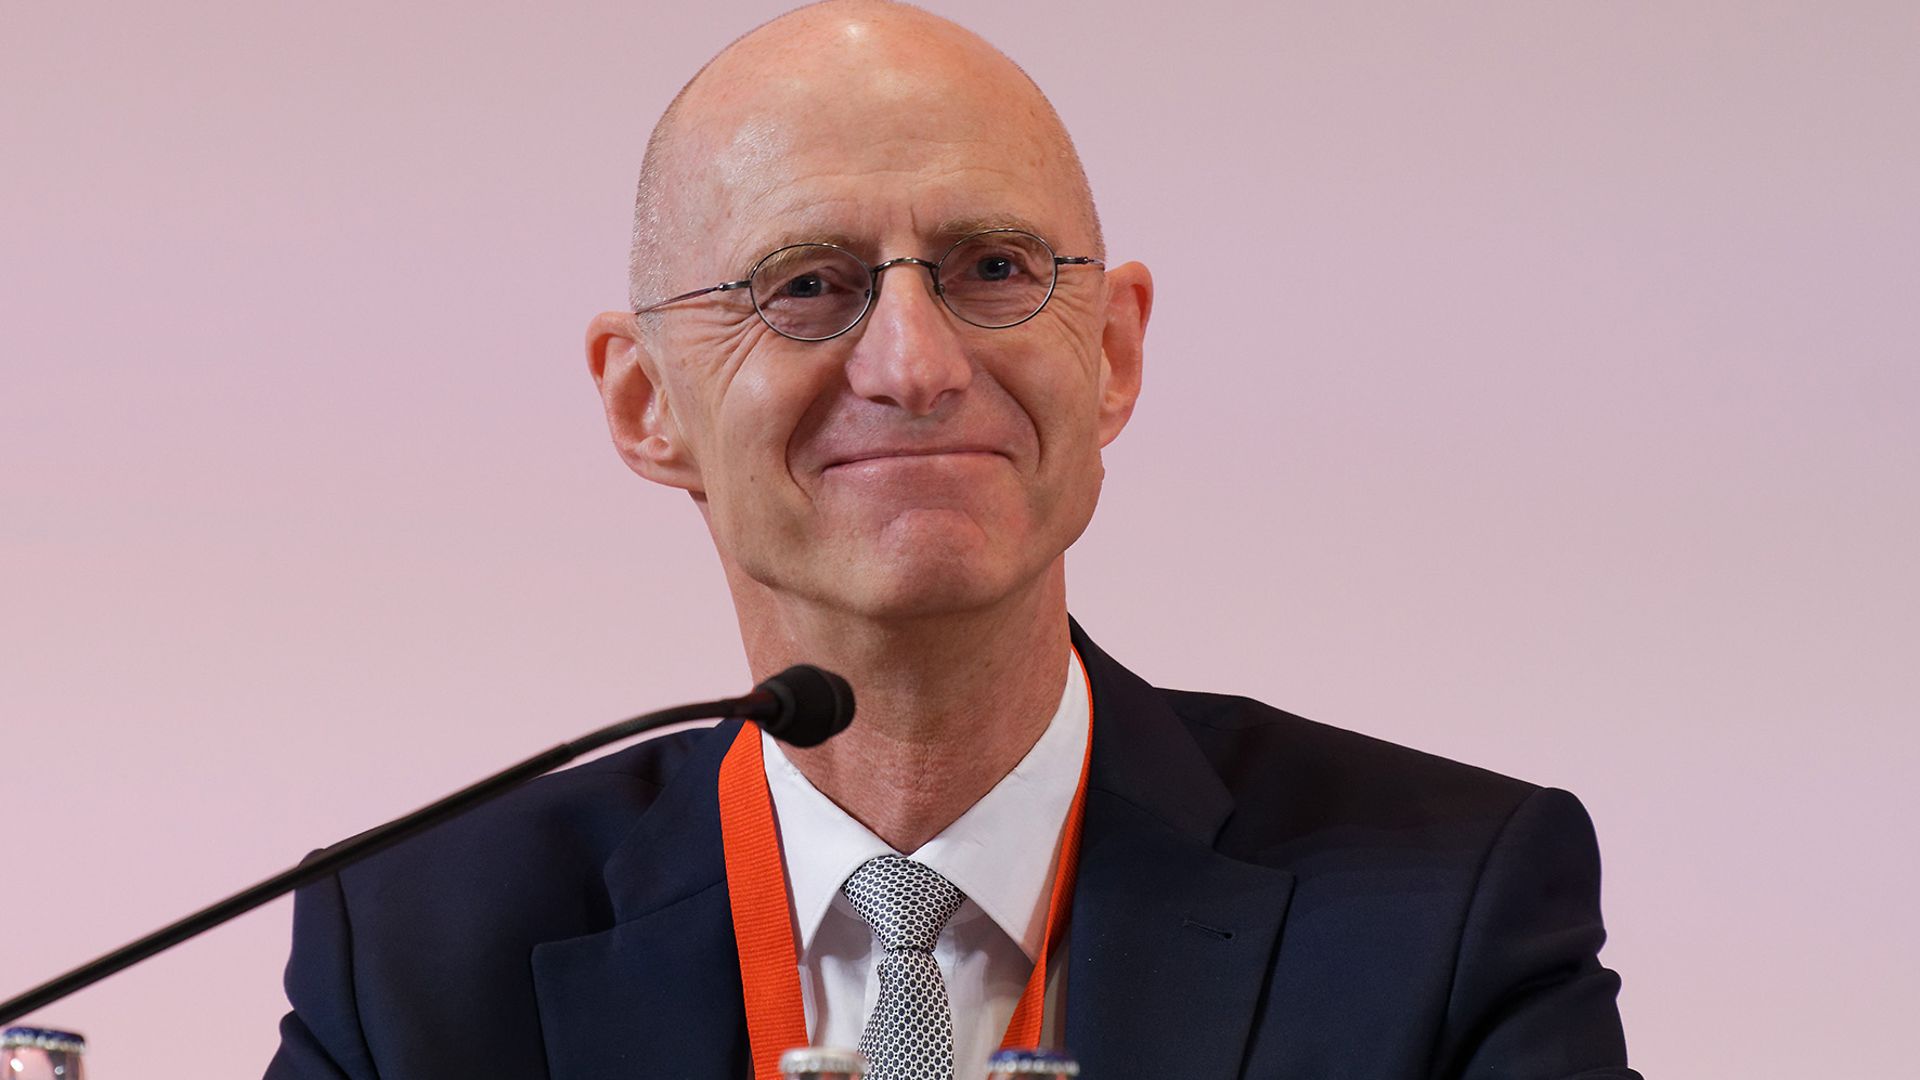 Generalstaatsanwalt Dr. Jörg Fröhlich